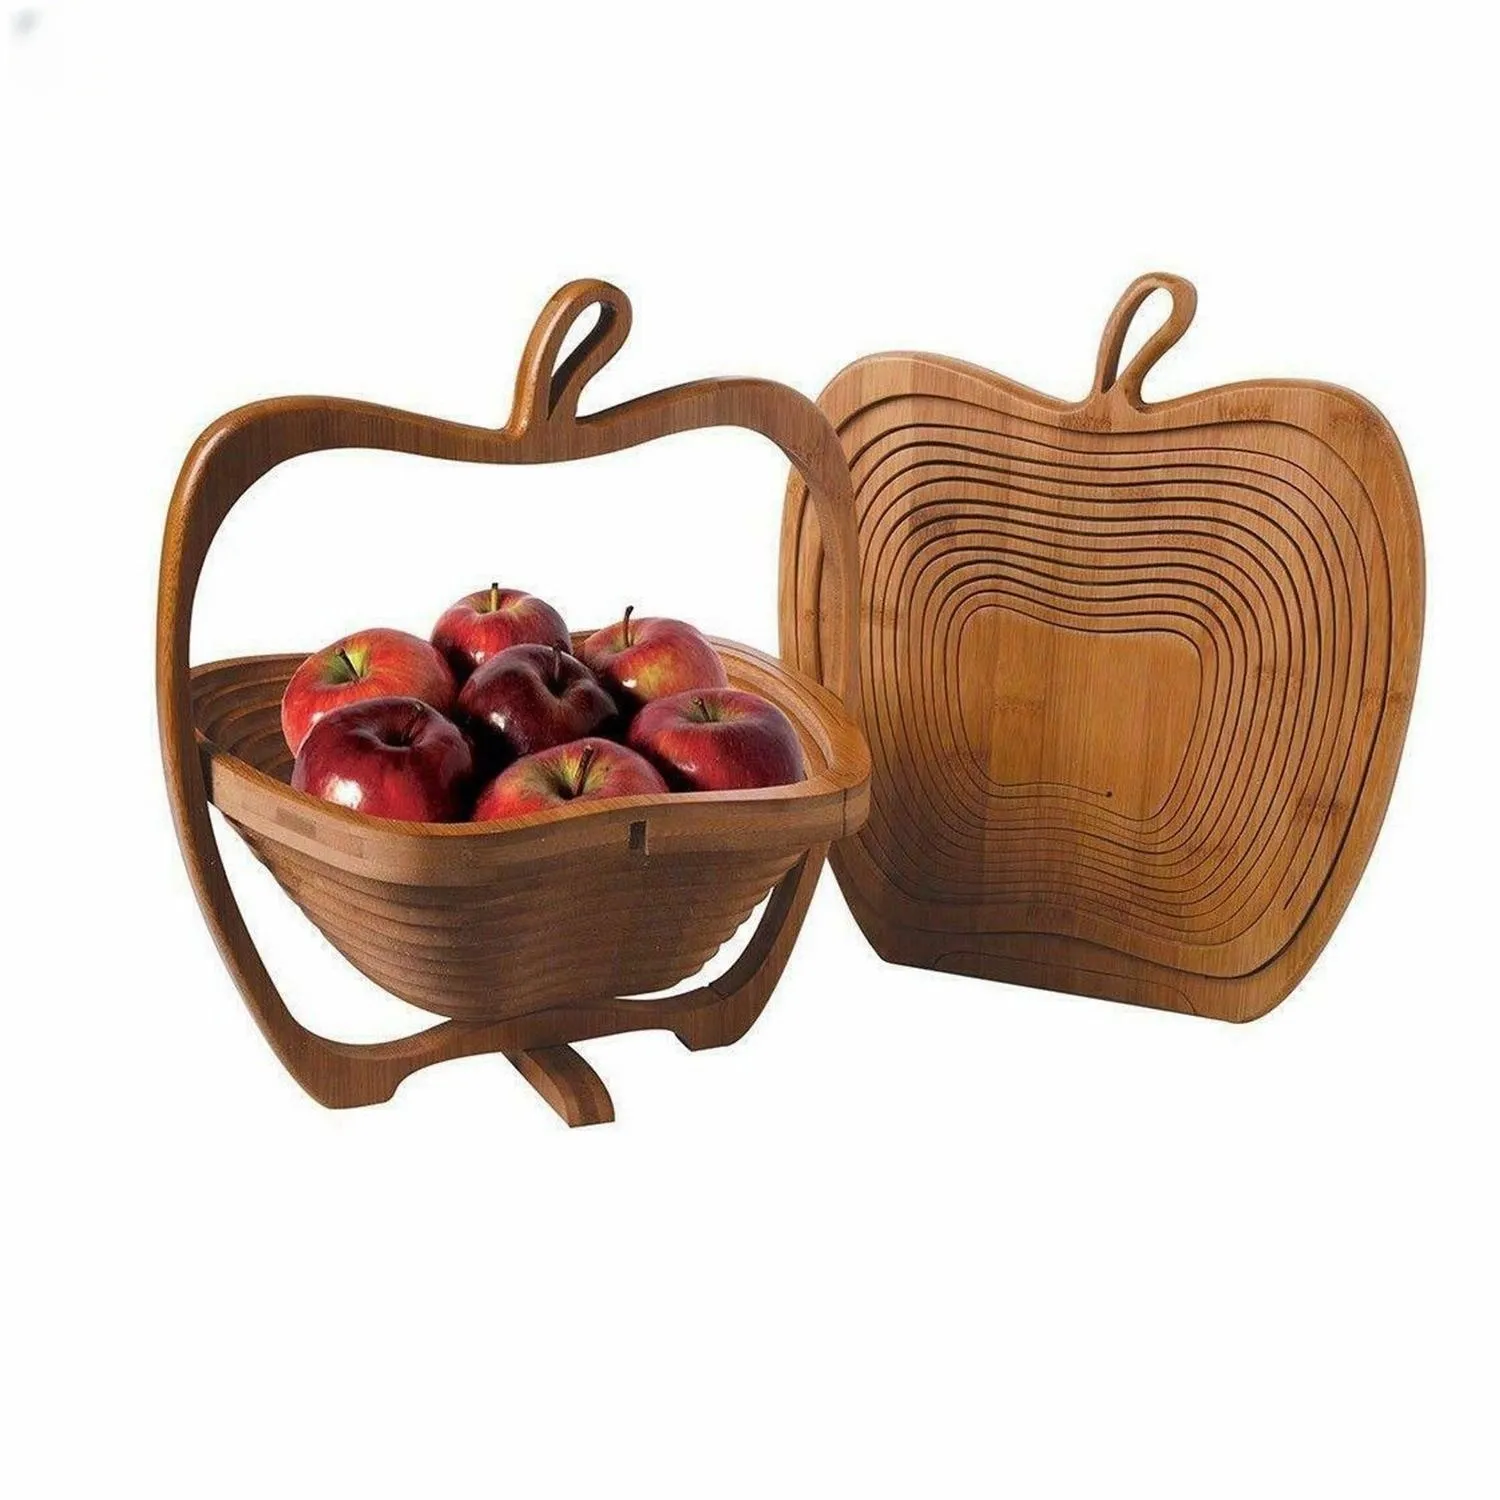 ตะกร้าผลไม้ไม้ไผ่พับได้สำหรับใช้ในบ้านตะกร้าผลไม้แอปเปิ้ลออกแบบได้ตามที่ต้องการ